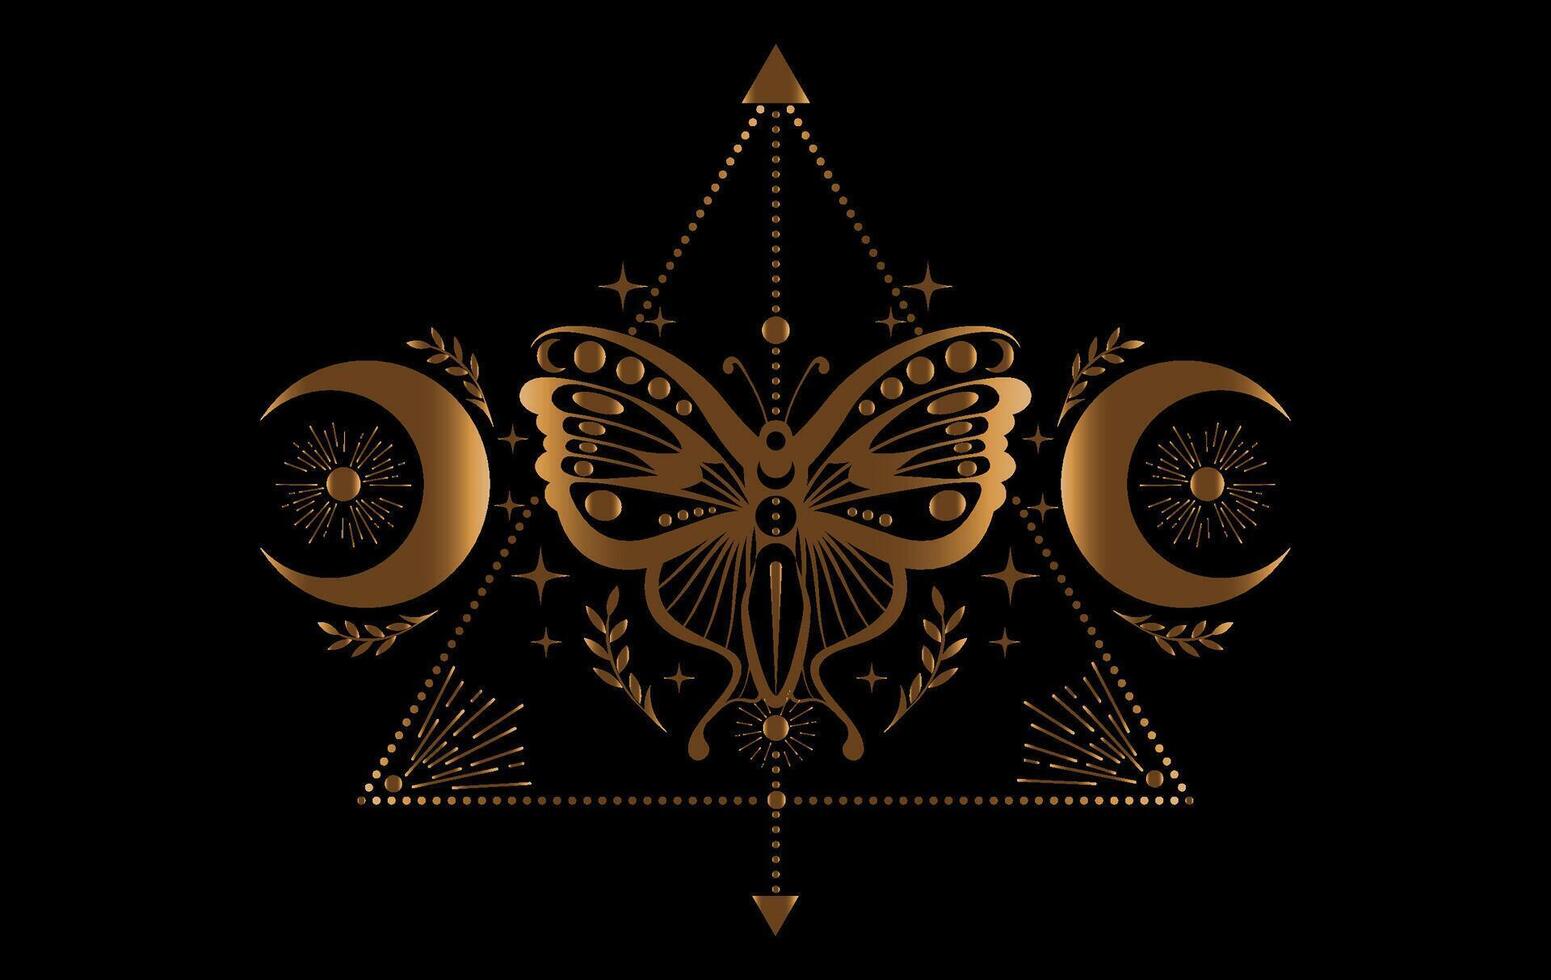 místico oro polilla, magia mariposa y creciente luna, sagrado símbolos para brujería, oculto, esoterismo, imprimir, póster. vector dorado pagano mágico sello aislado en negro antecedentes